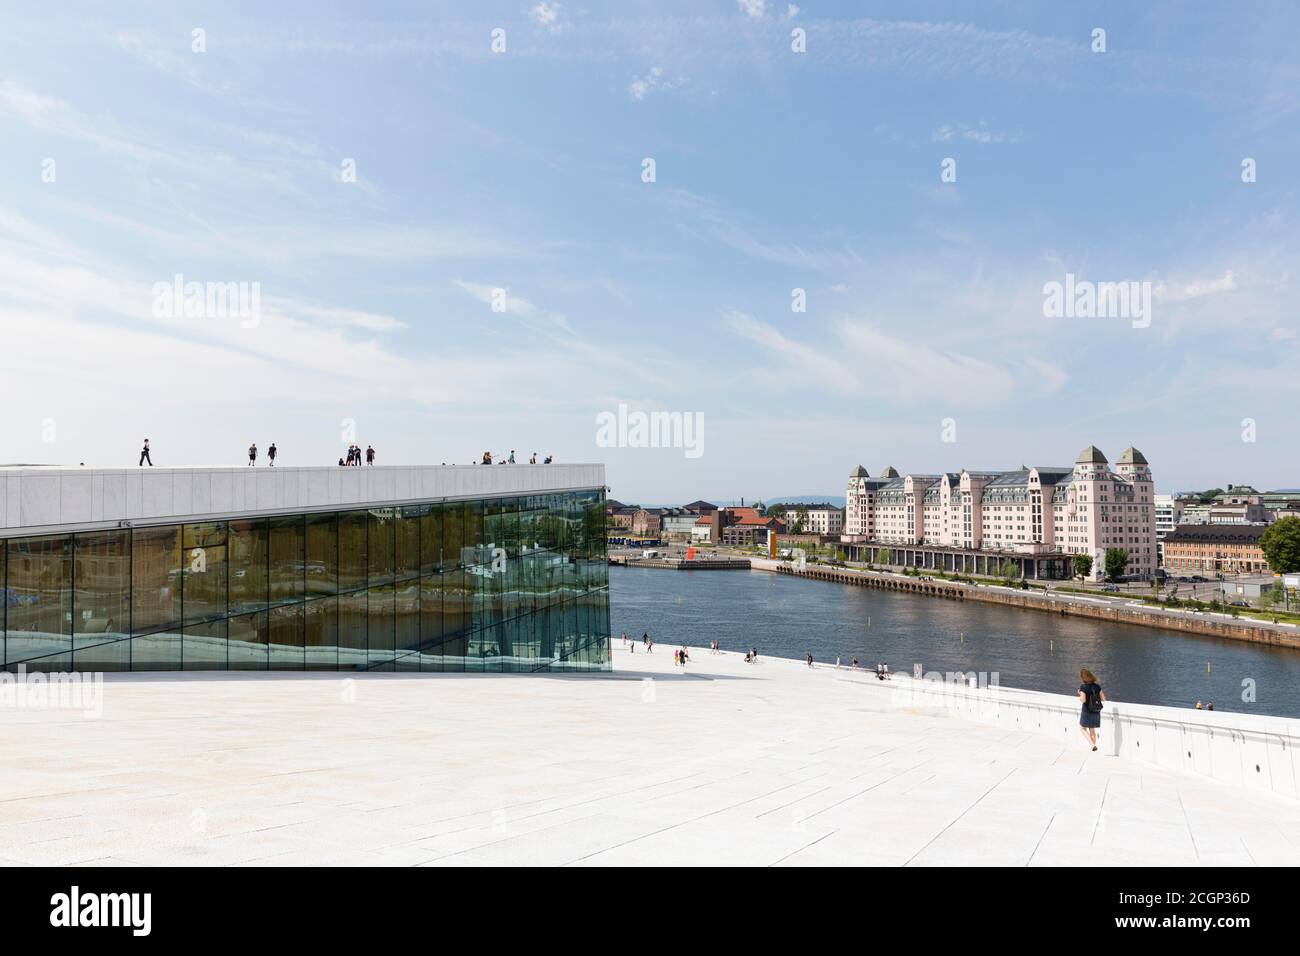 New Opera House Oslo, dagli architetti Snohetta, ex magazzino portuale, Havnelageret, oggi edificio uffici, quartiere Bjorvika, Oslo, Norvegia Foto Stock